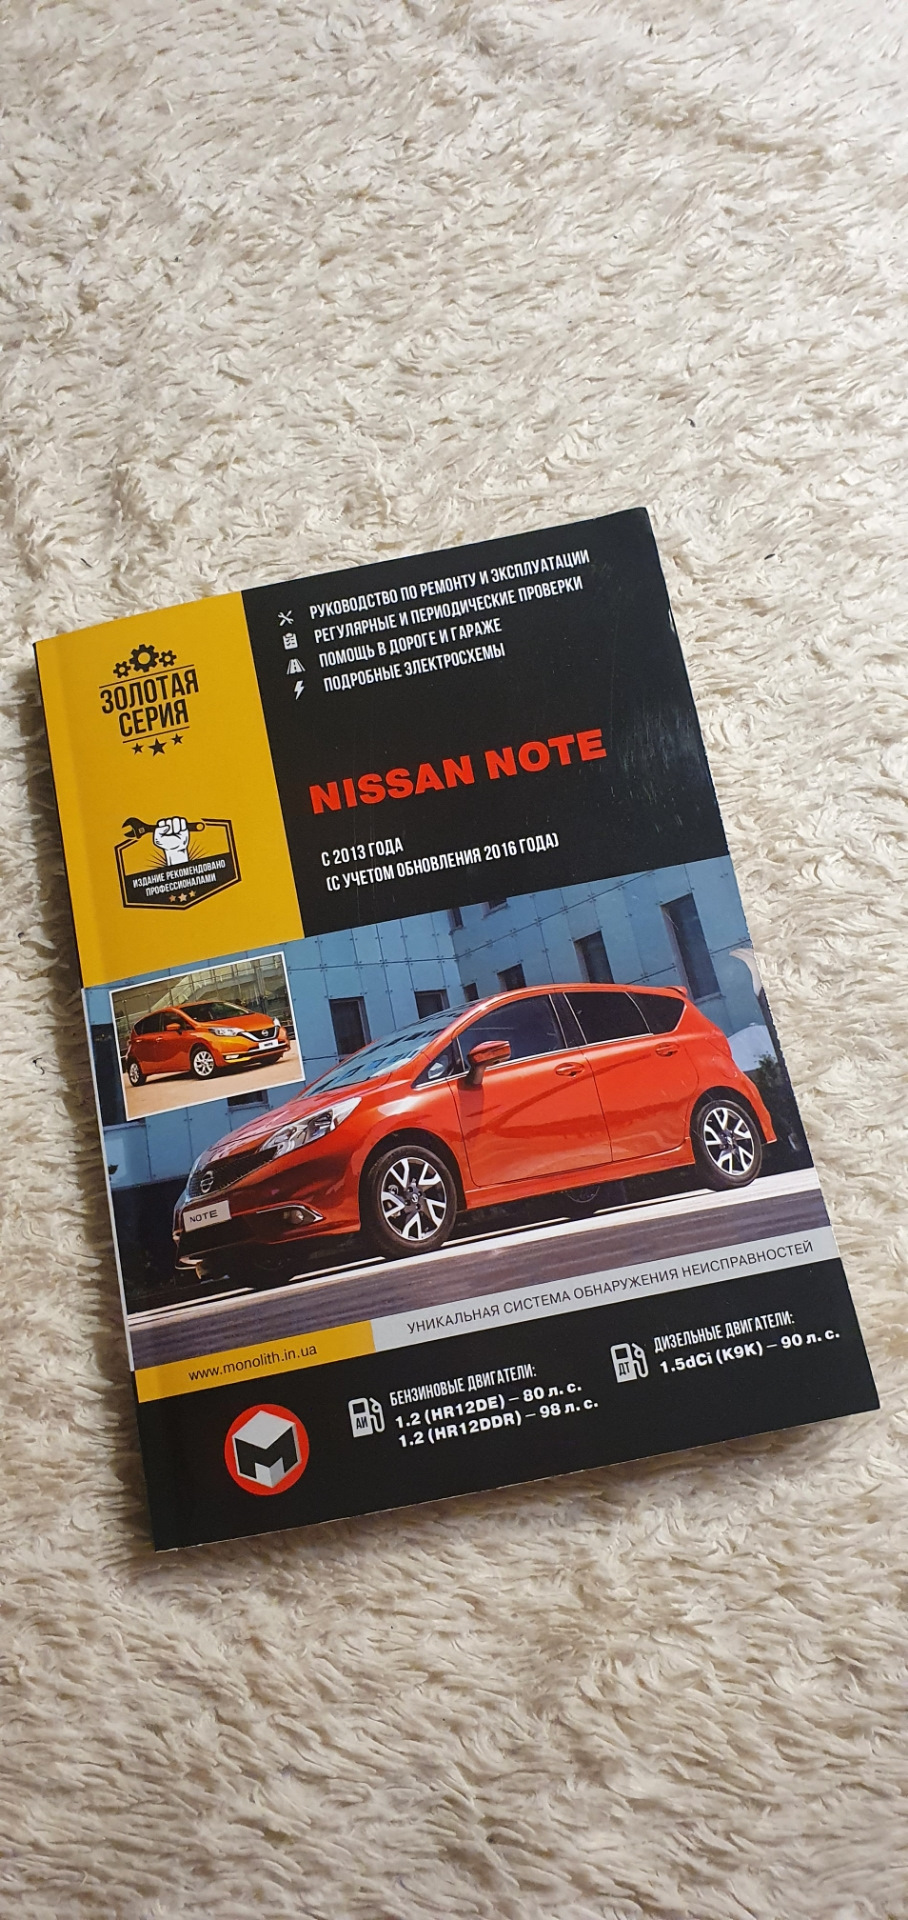 Качественный ремонт и обслуживание Nissan Note – гарантия долговечности Вашего авто